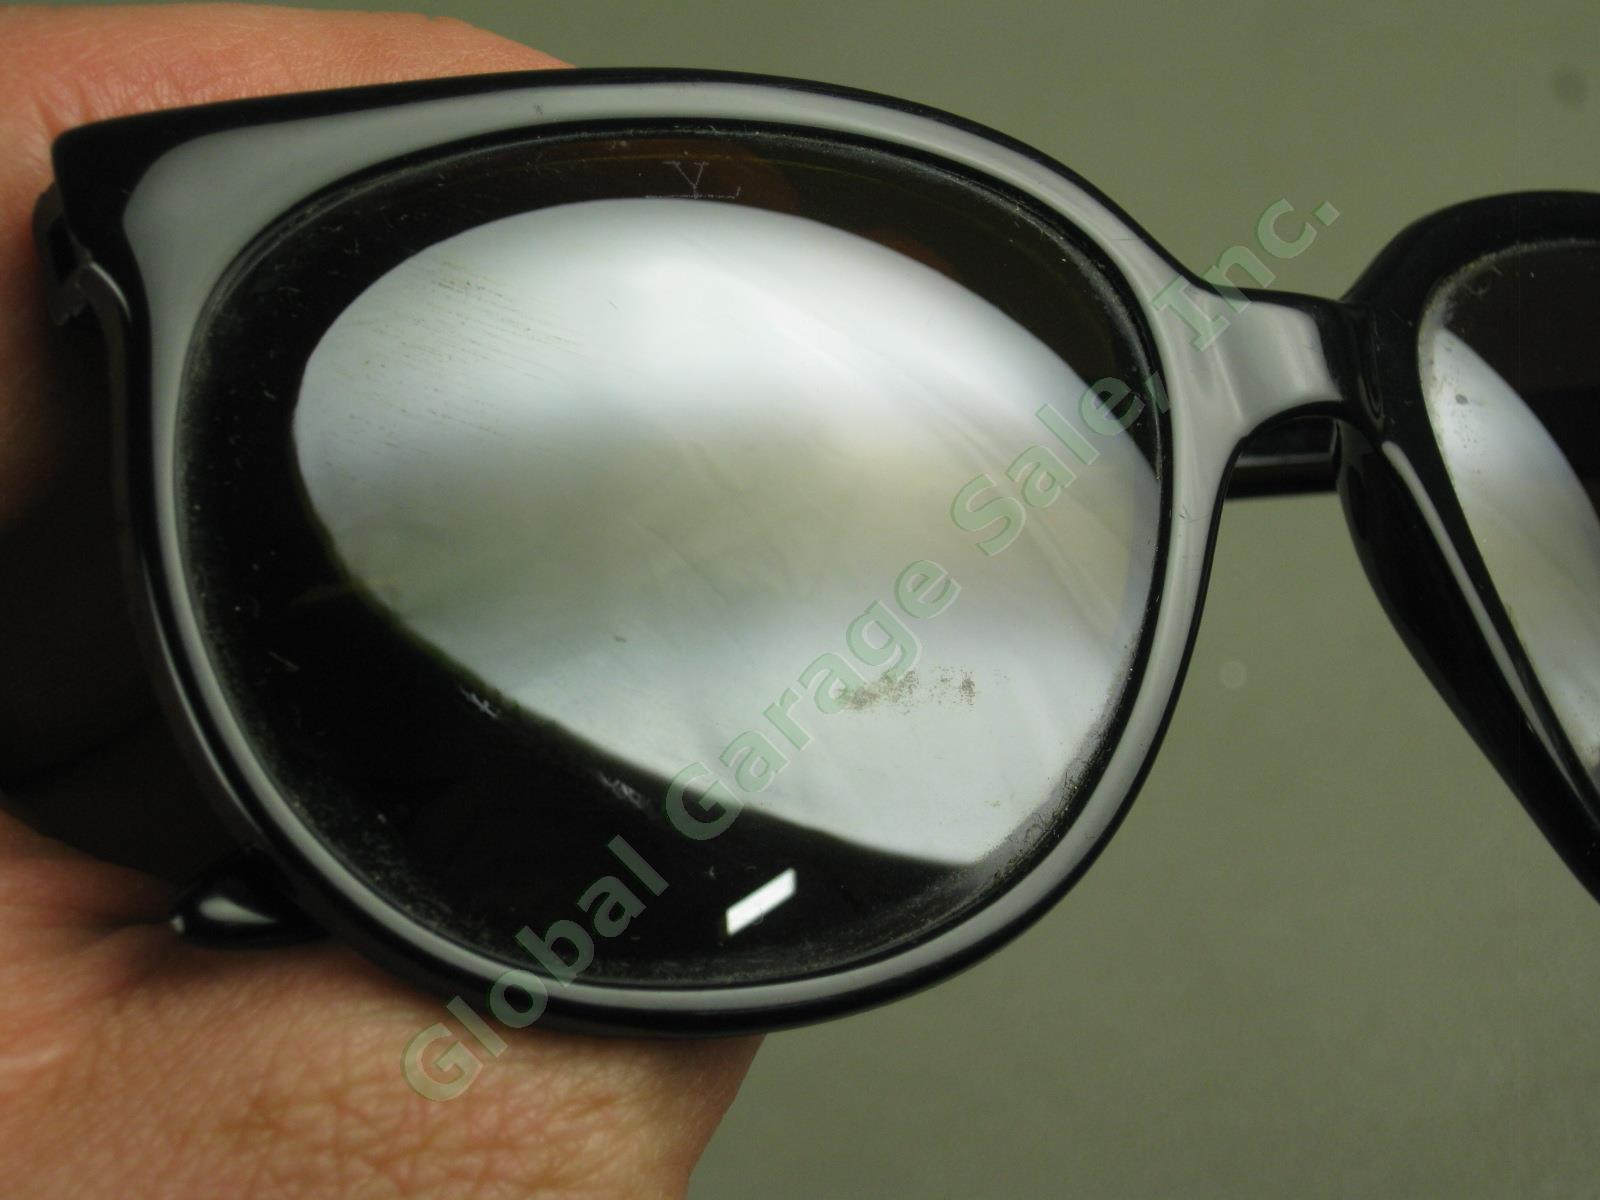 Vtg Skilynx-Acier-Vuarnet Pouilloux 4002 Black Sunglasses W/ Amber Lenses France 1